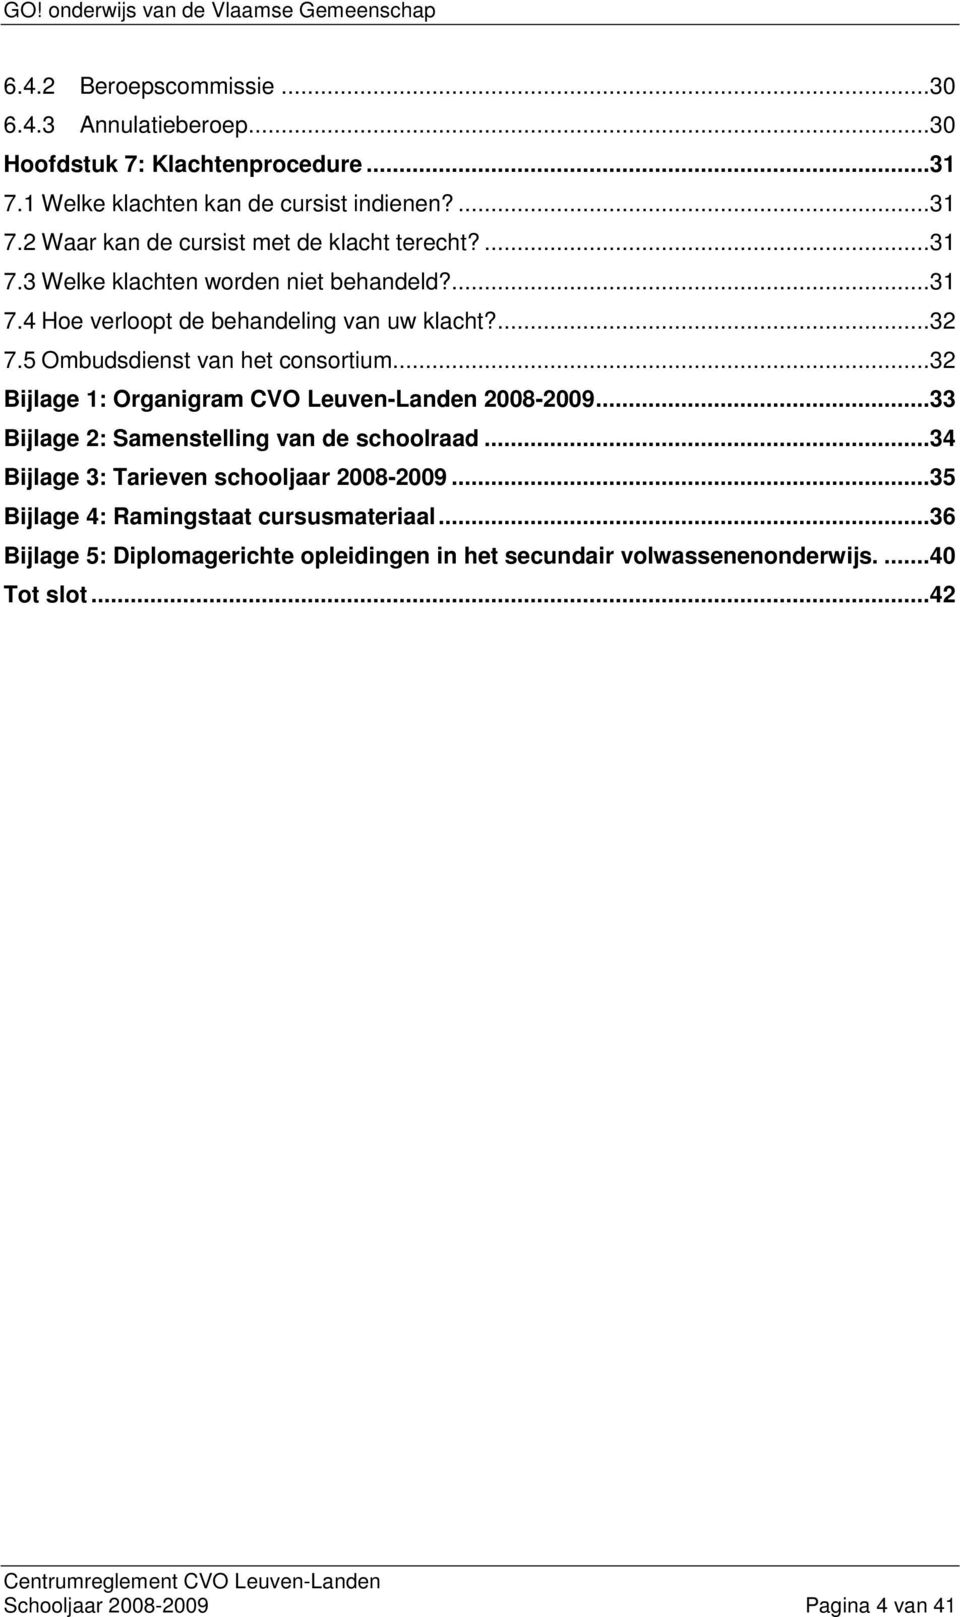 ..32 Bijlage 1: Organigram CVO Leuven-Landen 2008-2009...33 Bijlage 2: Samenstelling van de schoolraad...34 Bijlage 3: Tarieven schooljaar 2008-2009.